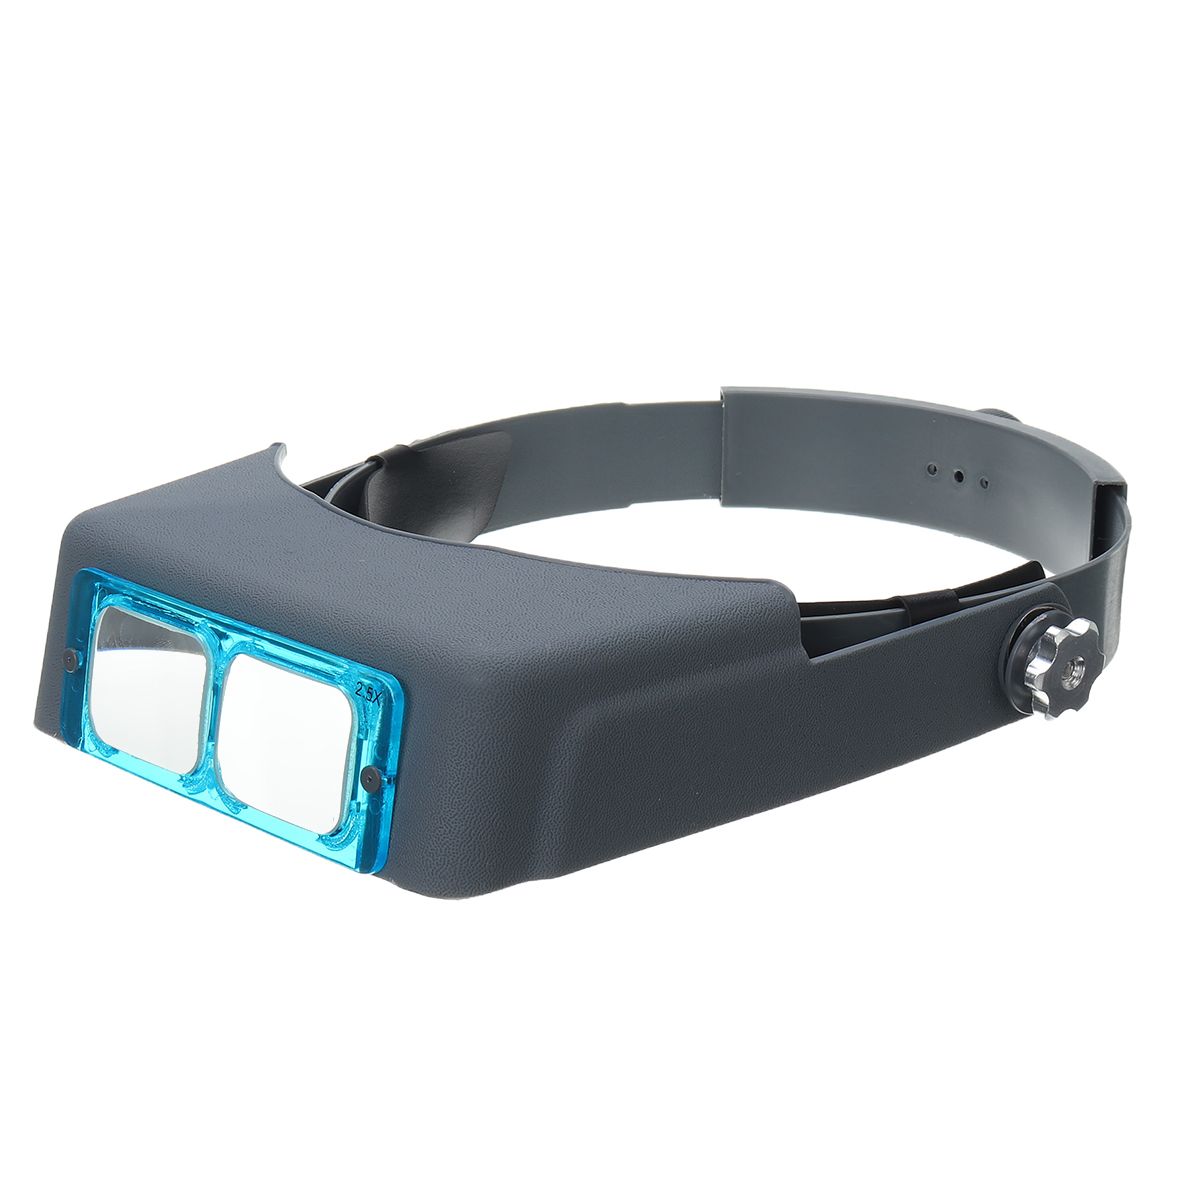 Head-Magnifier-Optivisor-Lens-Glasses-Magnifying-Visor-Glass-Headband-4-Lenses-1562566